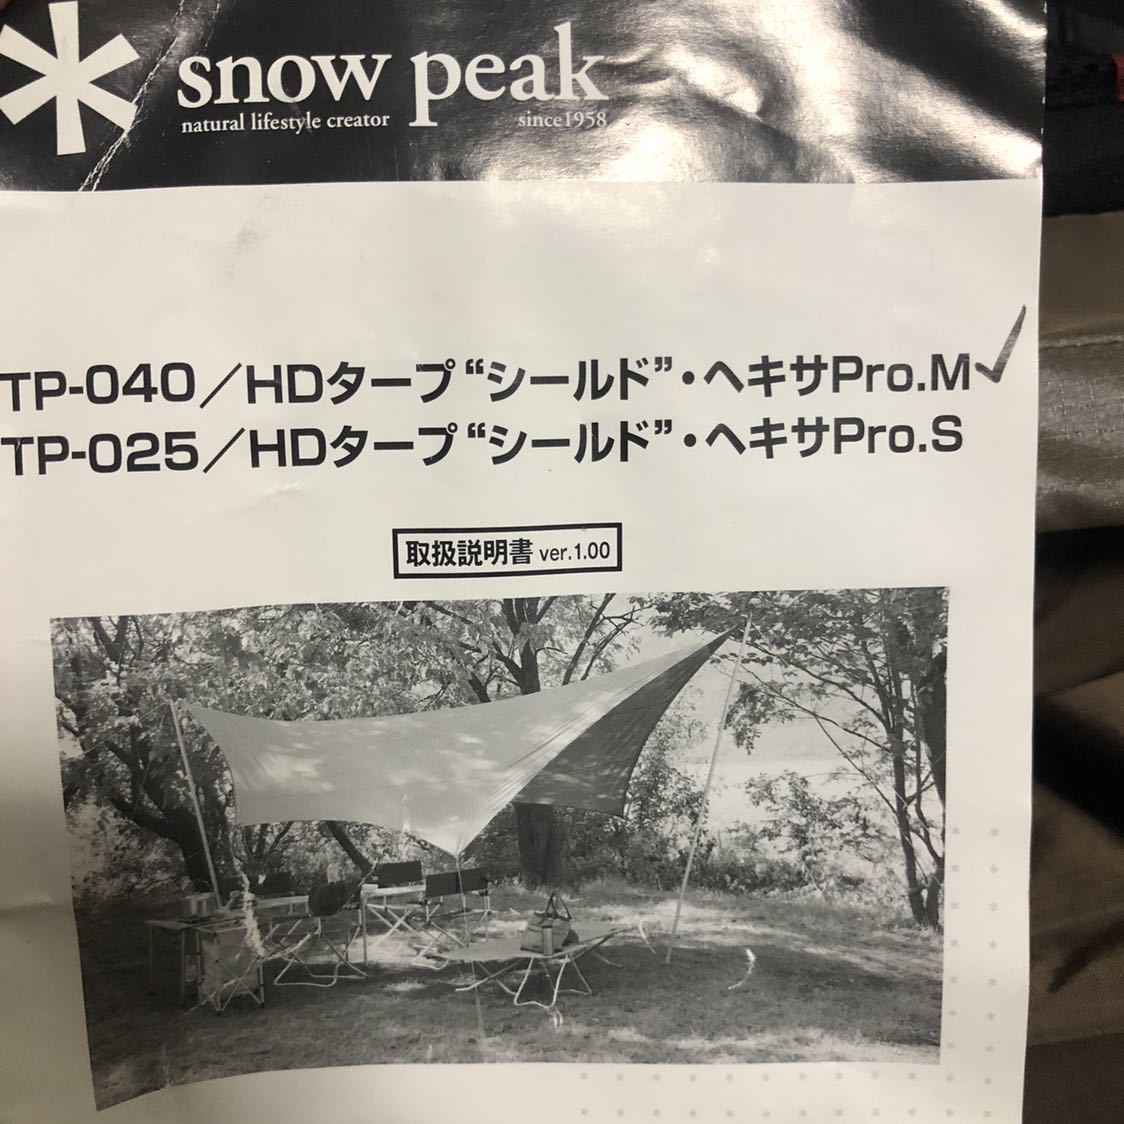 Snow Peak HD Tarp Shield Hexa Pro M停產使用2次Paul Set 原文:スノーピーク HDタープ シールド ヘキサPro M 廃盤 使用2回 ポールセット